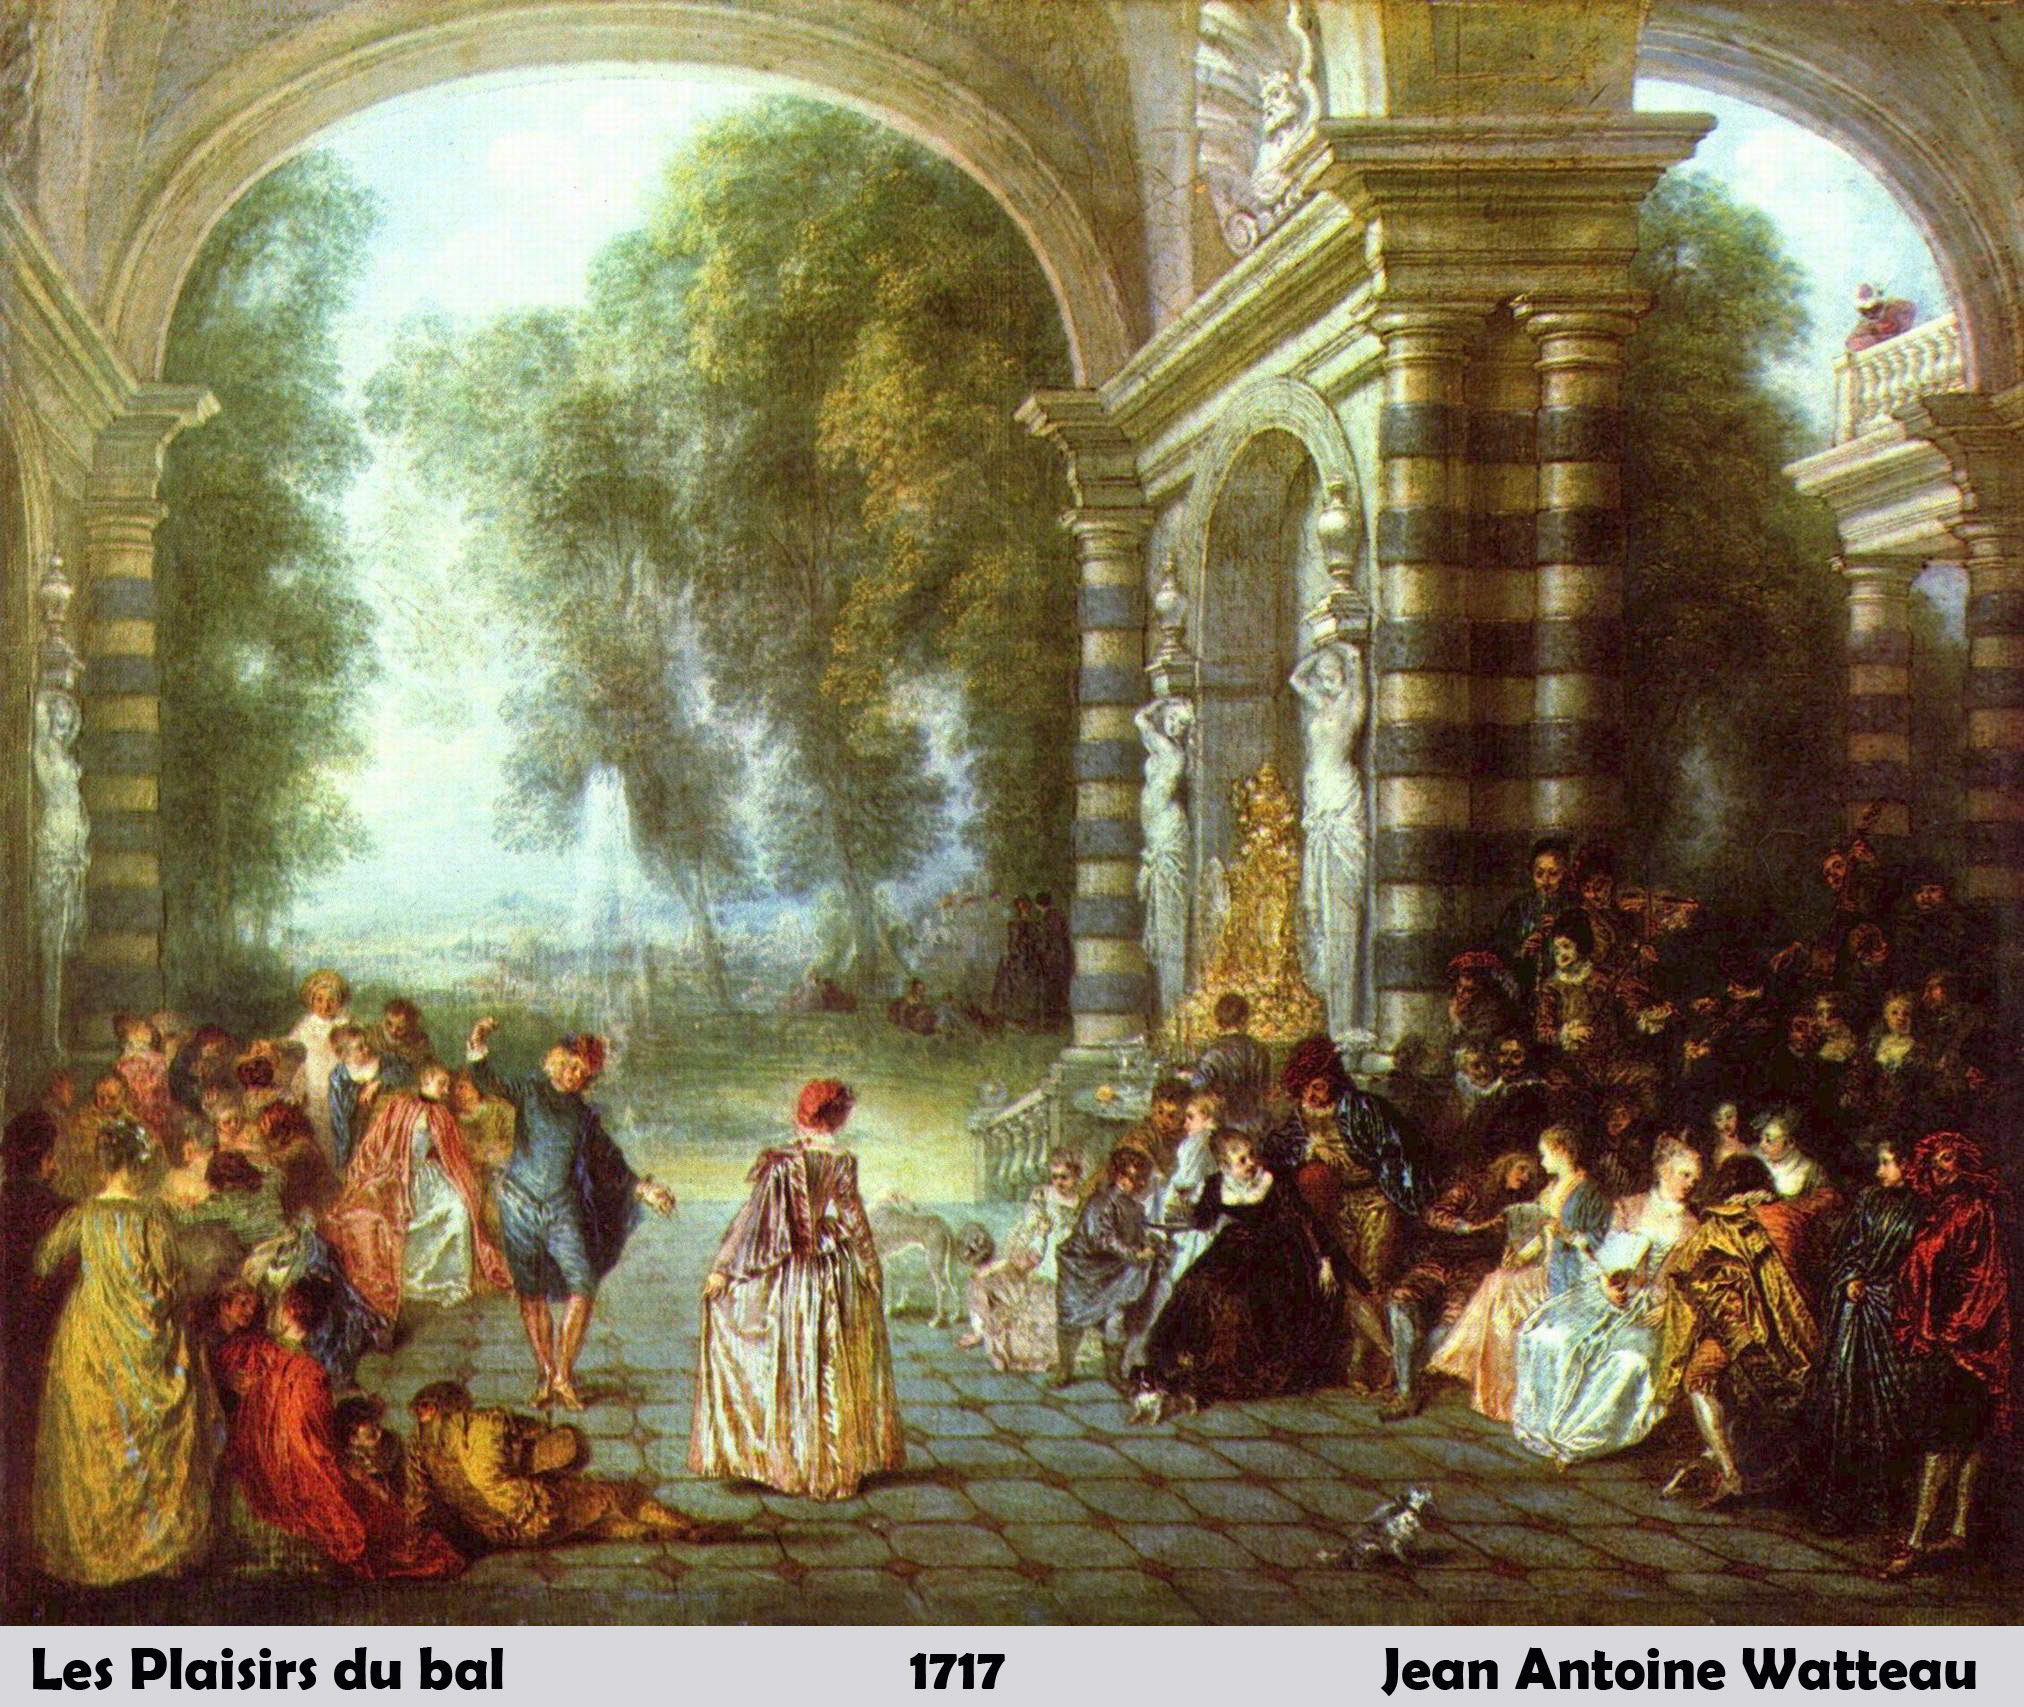 Les Plaisirs du bal by Jean Antoine Watteau